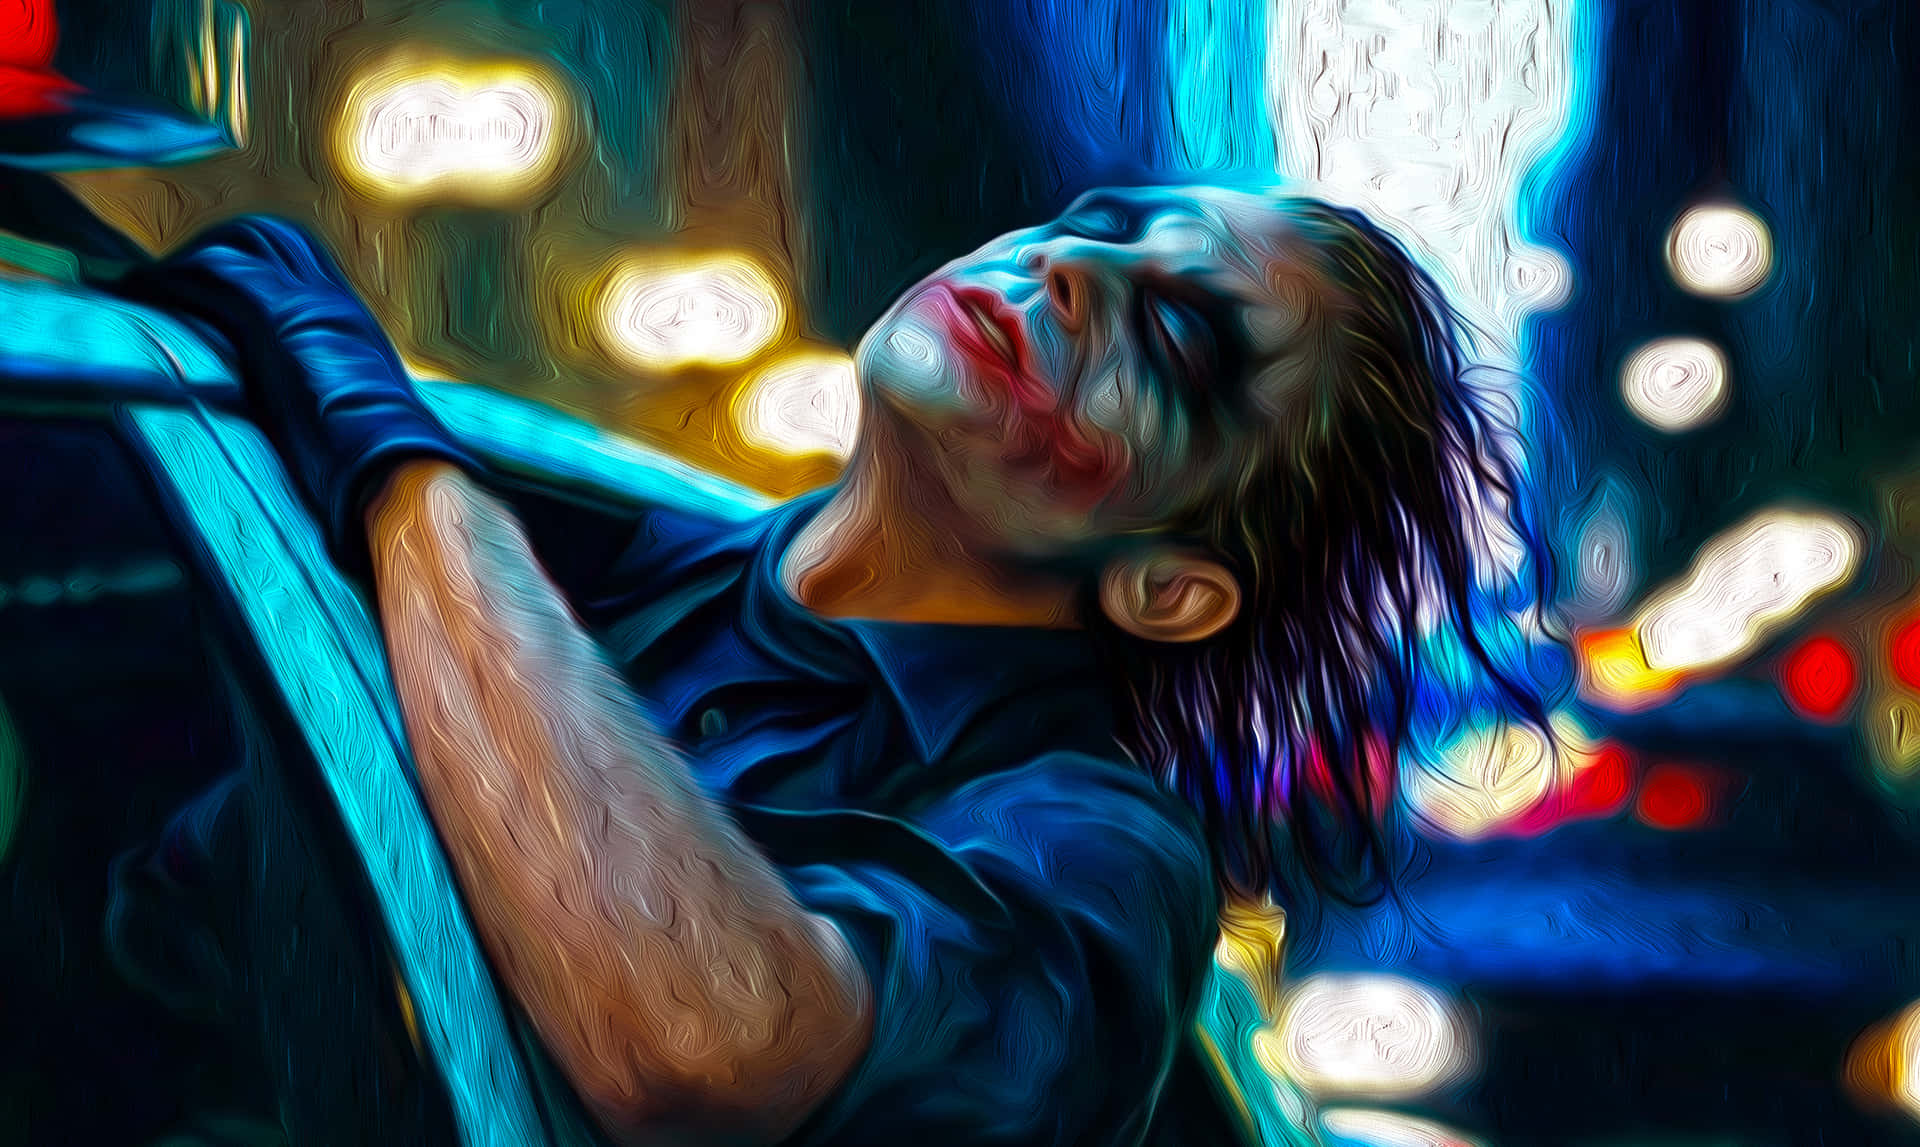 Jokertavelmålning - Joker Tavelkonsttryck. Wallpaper